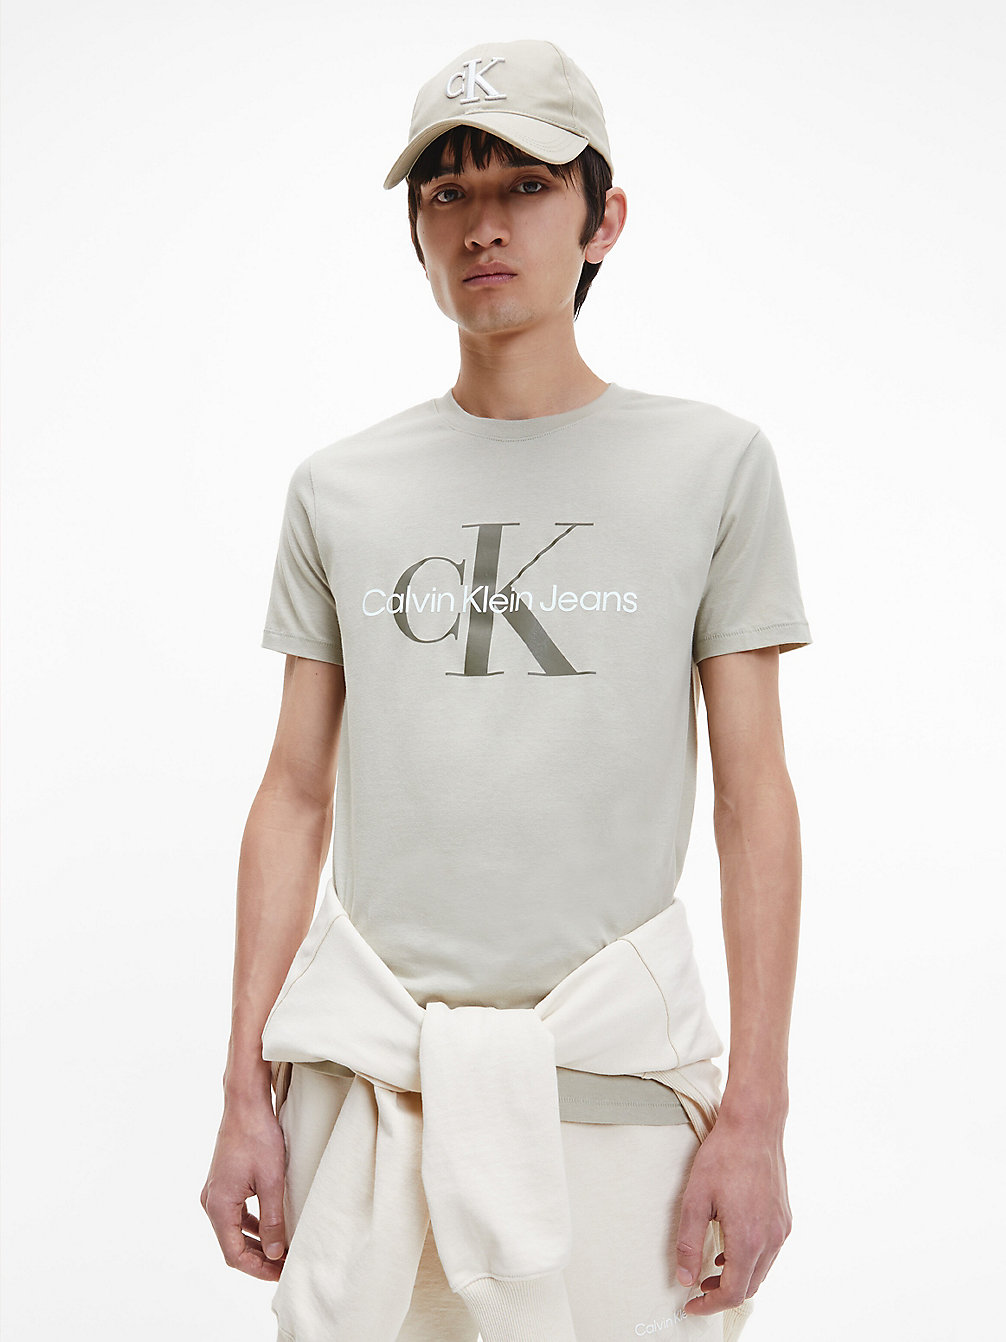 WHEAT FIELDS Schmales Logo-T-Shirt Aus Bio-Baumwolle undefined Herren Calvin Klein